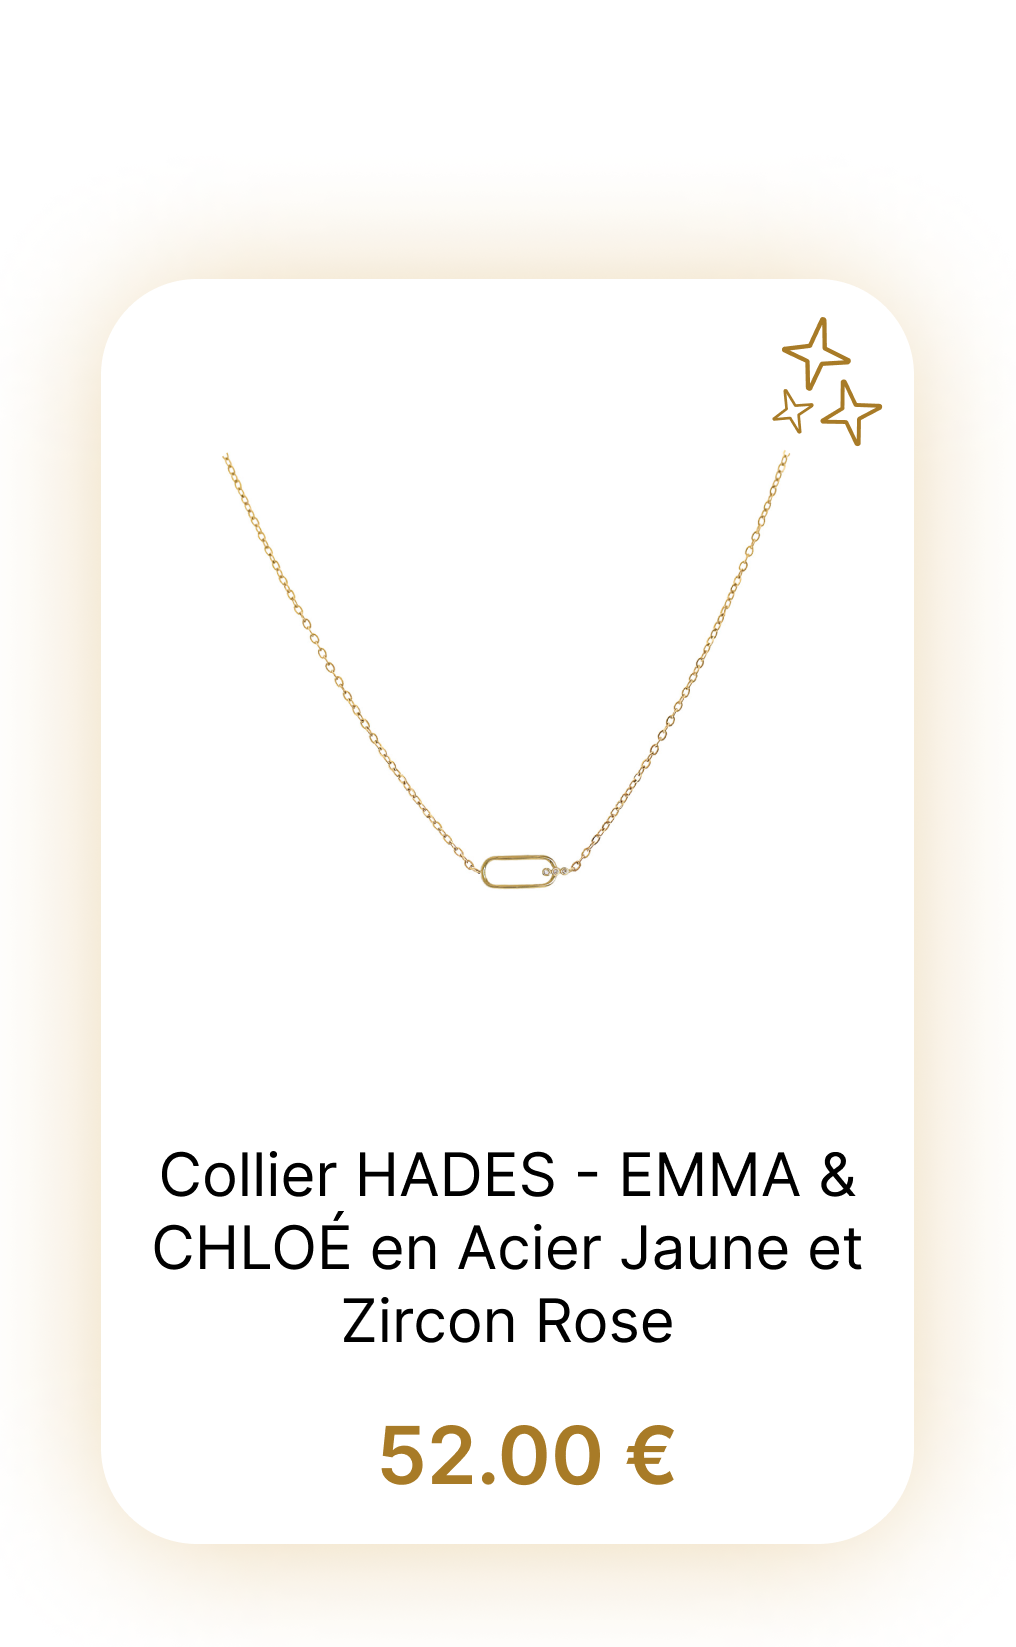 Collier HADES - EMMA & CHLOÉ en Acier Jaune et Zircon Rose